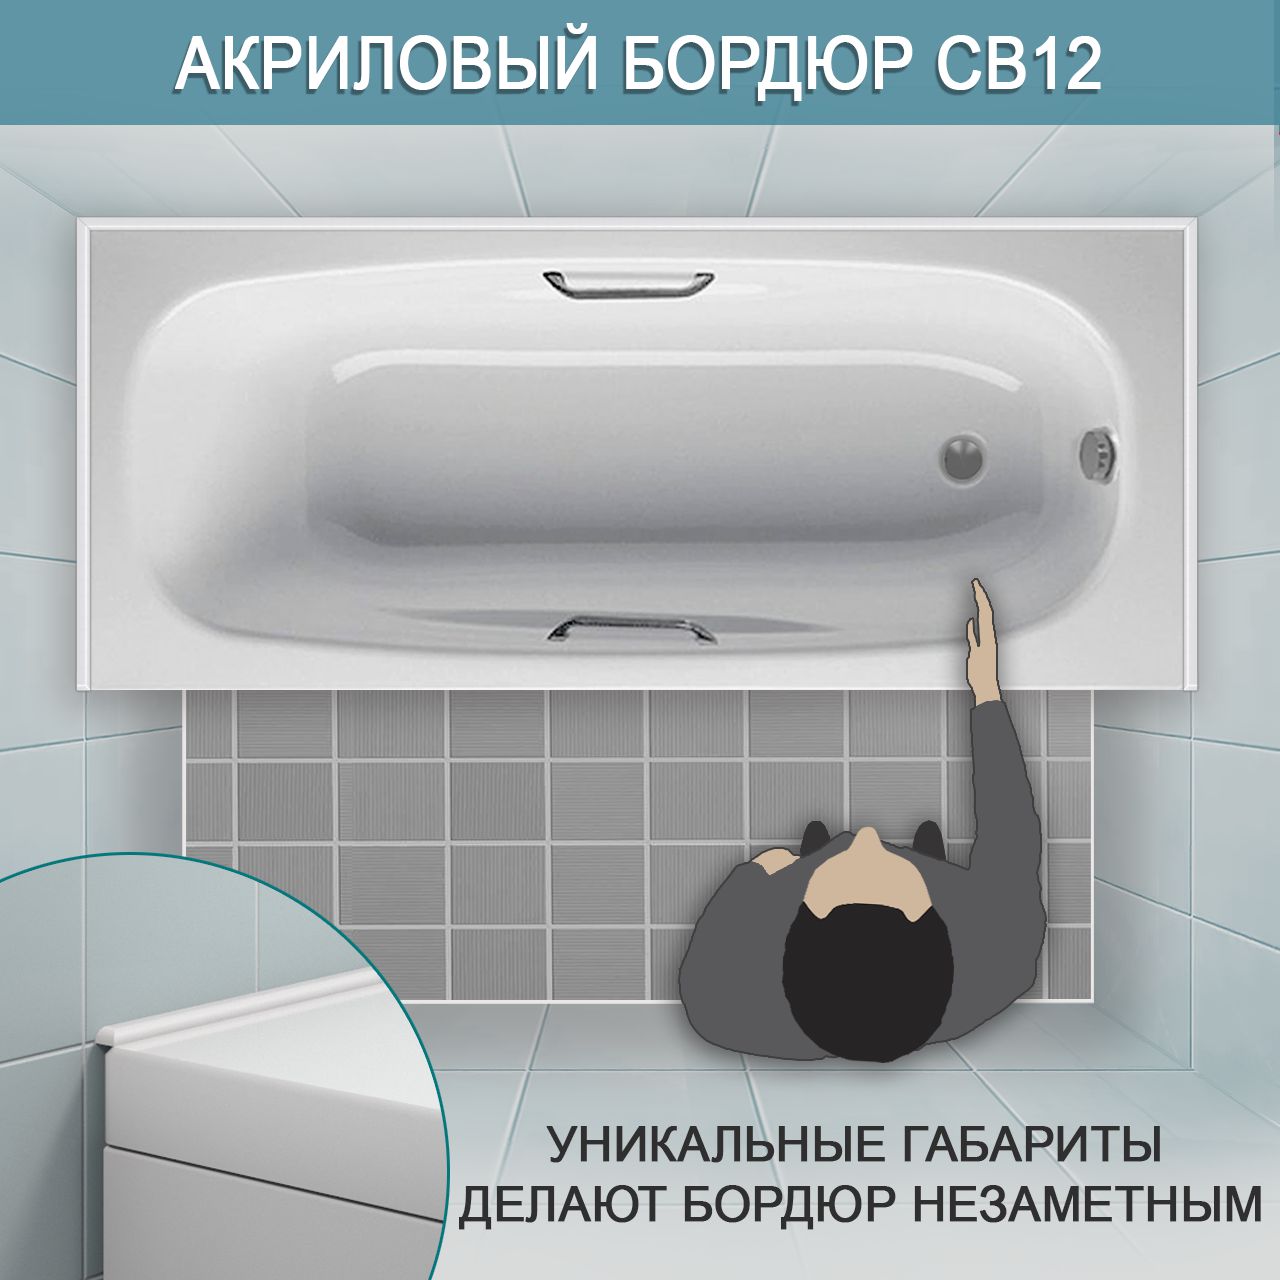 Акриловый бордюр для ванной СВ. интернет-магазин BNV